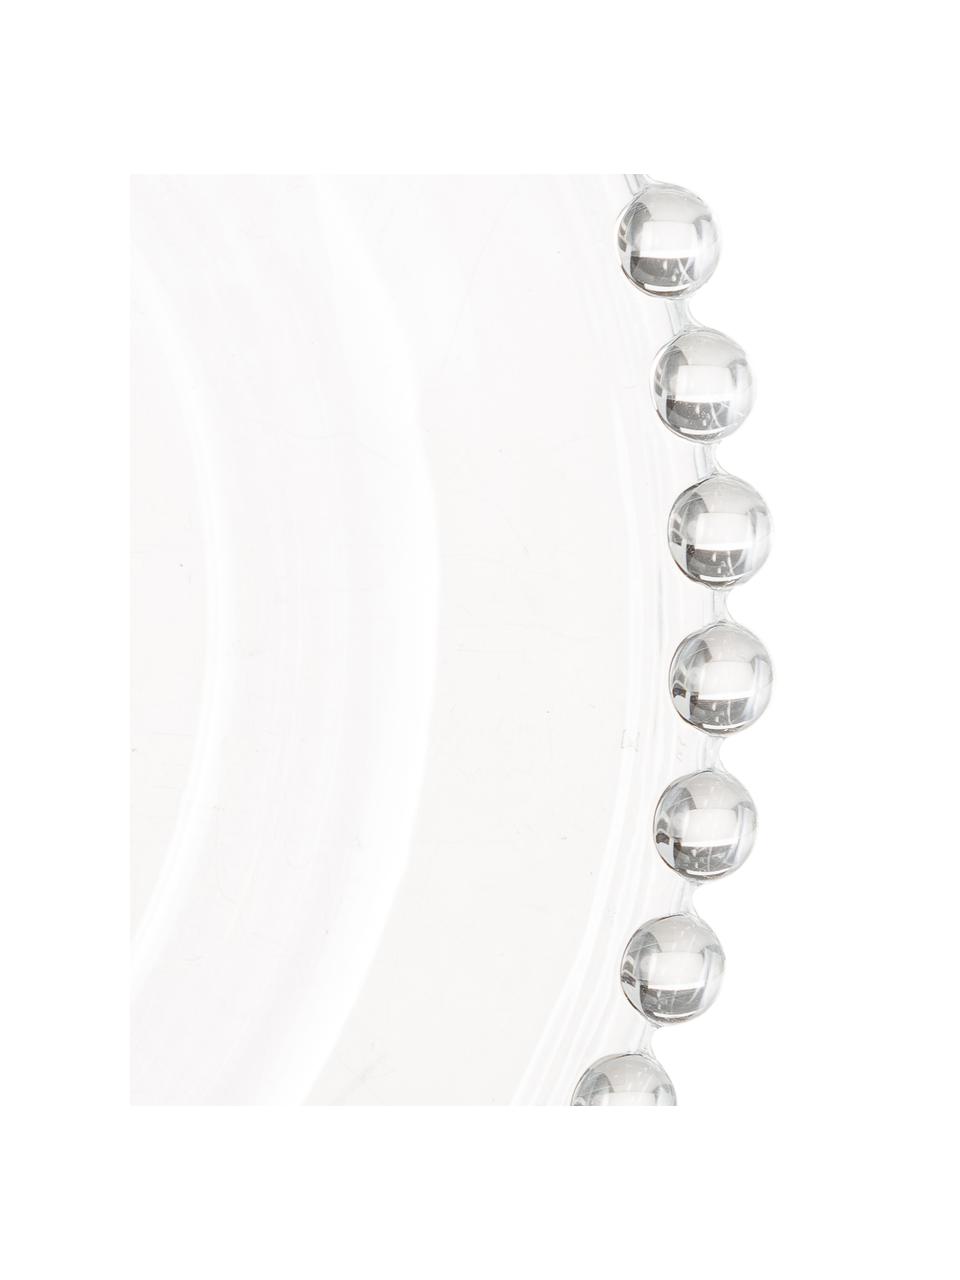 Glas-Dessertteller Perles mit Randdekor, 2 Stück, Glas, Transparent, Ø 21 cm